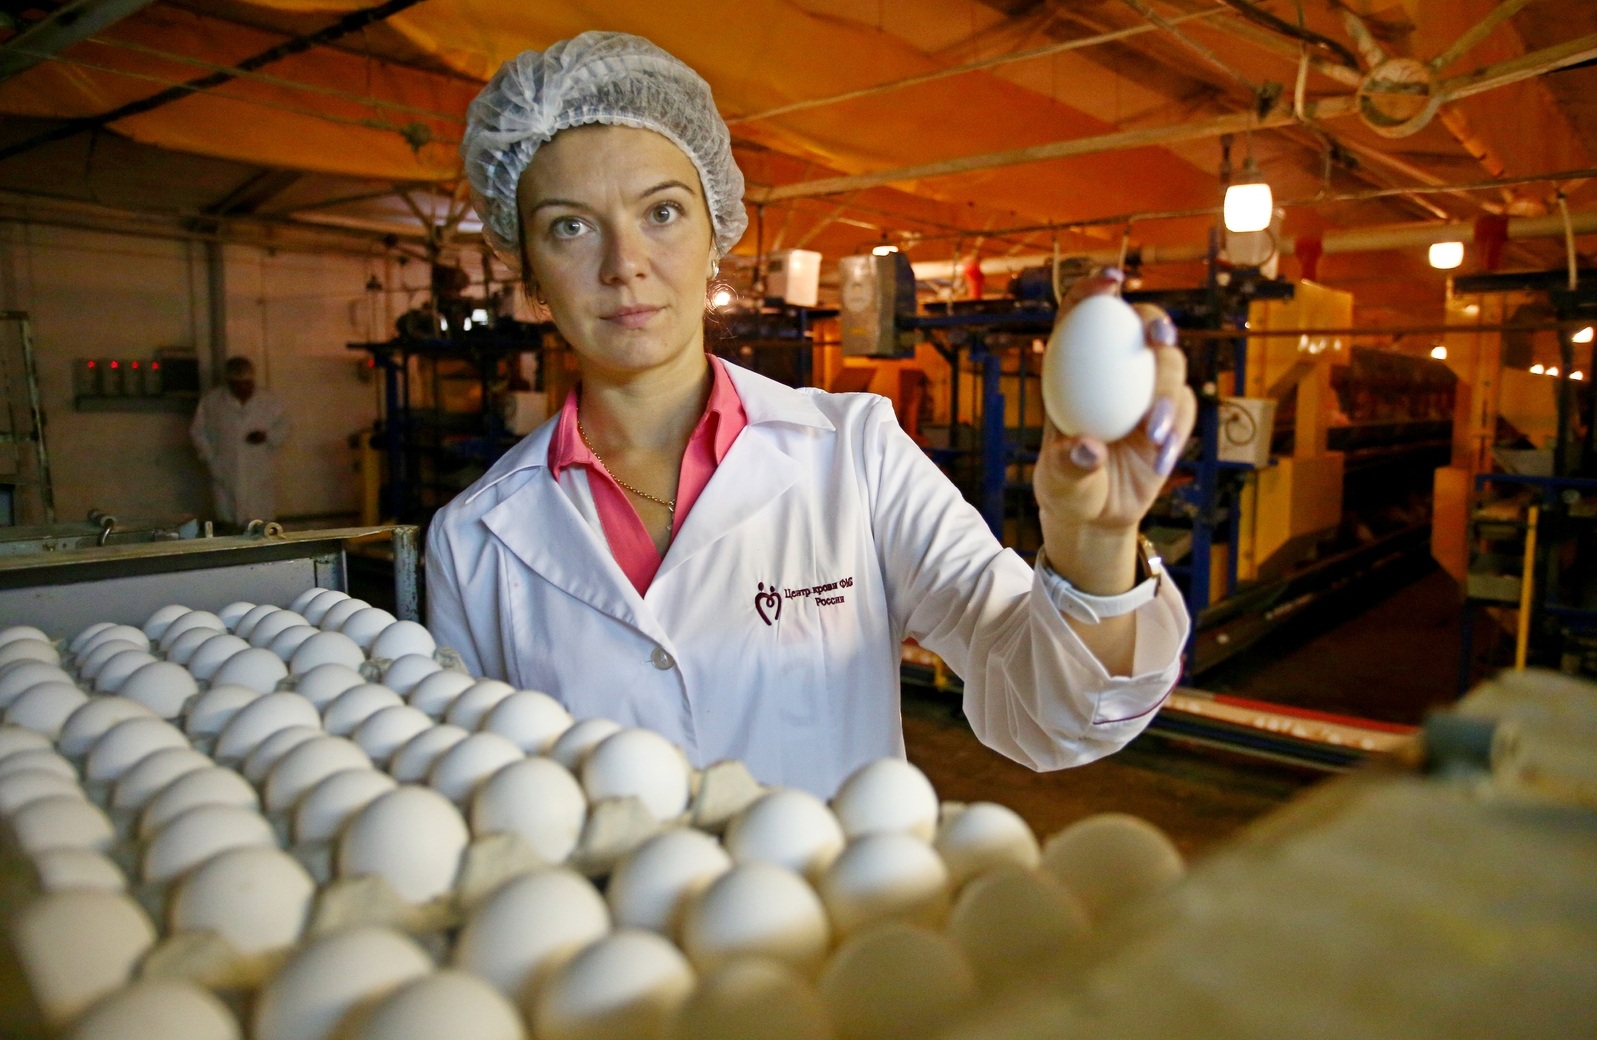 Яйца считаются источником питательных веществ, в том числе белков, витаминов и незаменимых жирных кислот. Фото: Антон Гердо